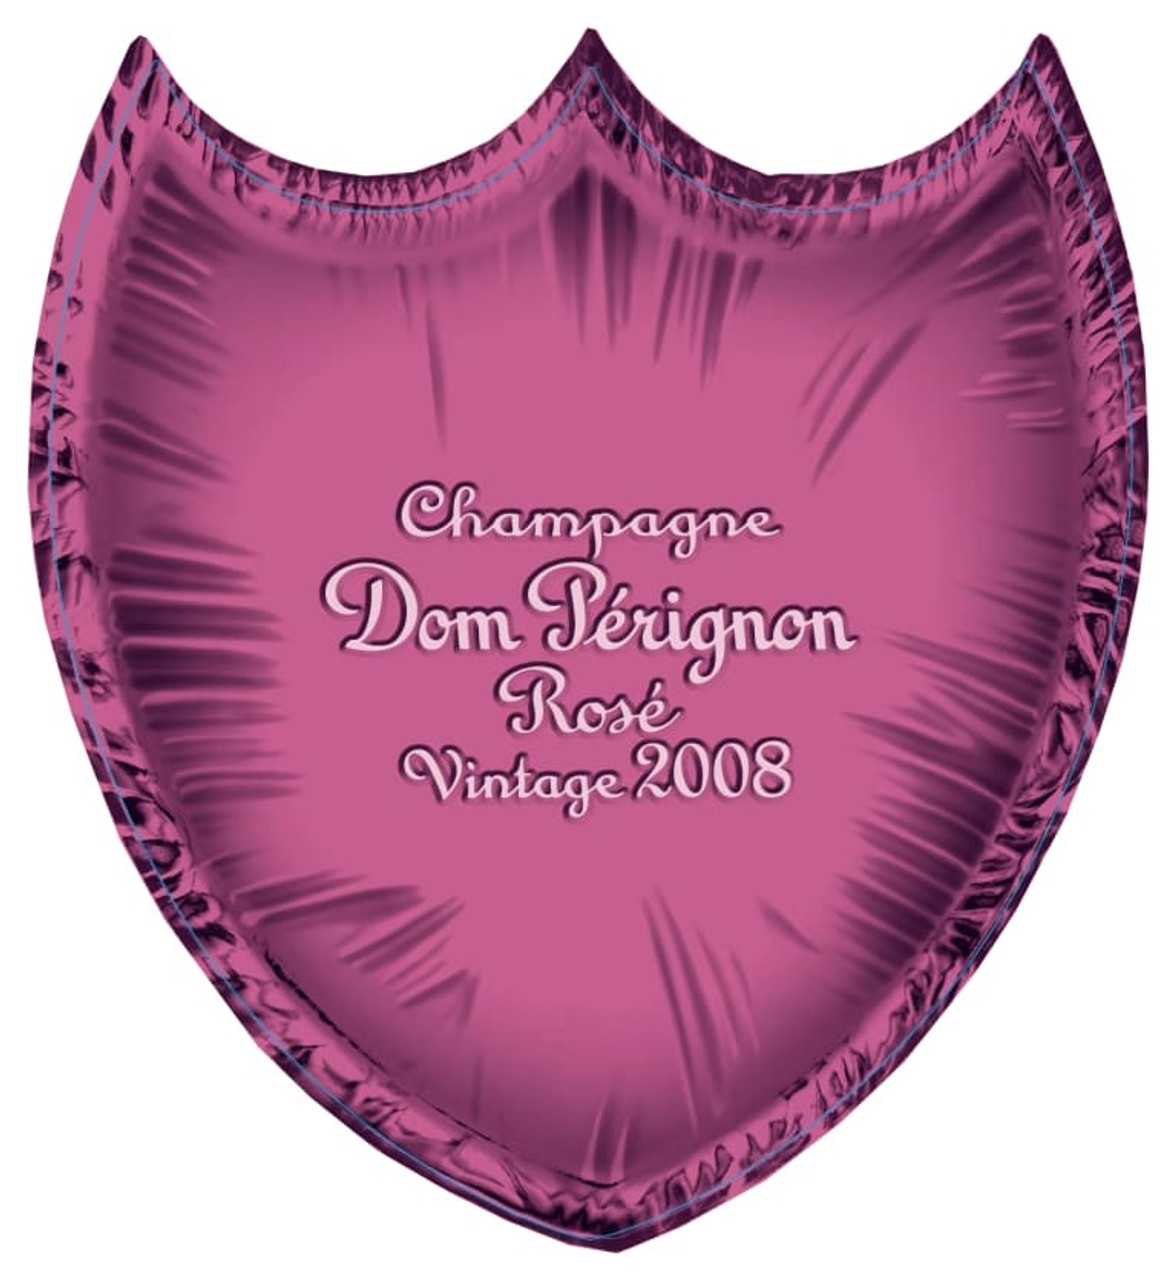 Dom Perignon Lady Gaga Brut Champagne